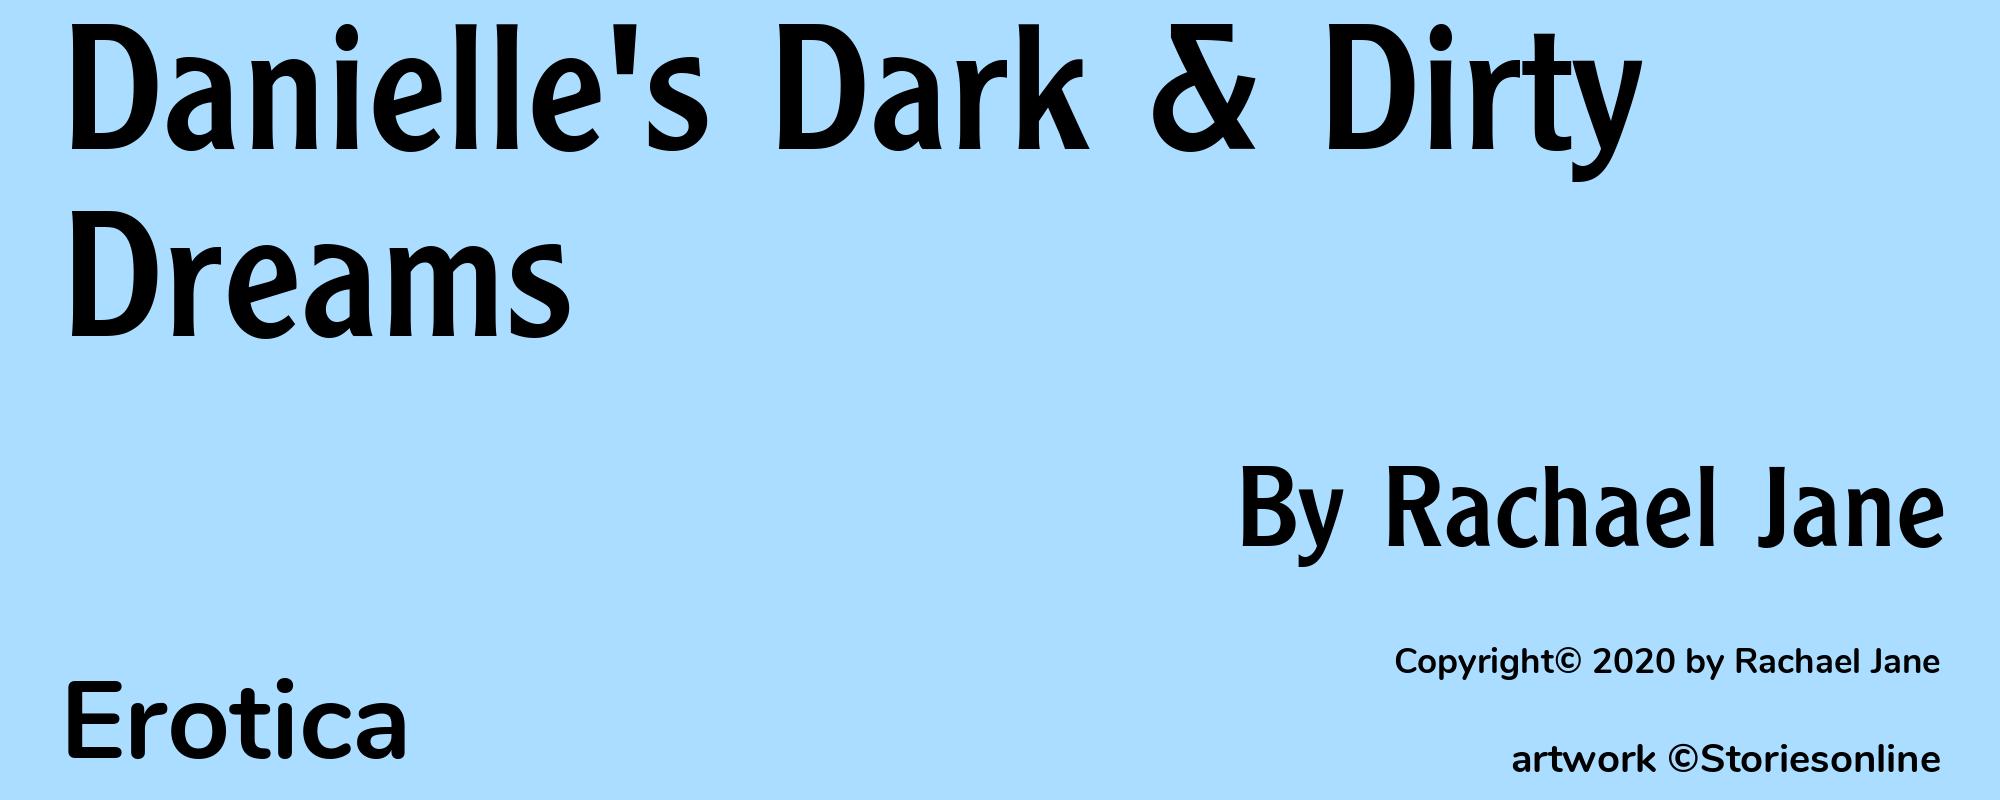 Danielle's Dark & Dirty Dreams - Cover